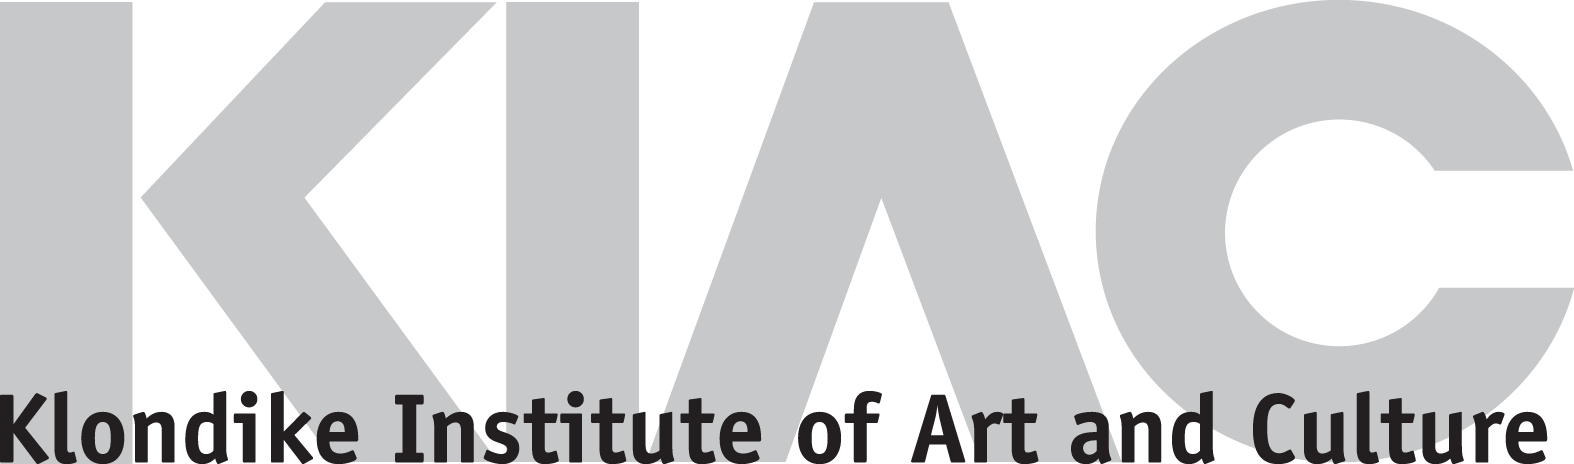 KLONDIKE INSTITUTE OF ART & CULTURE logo